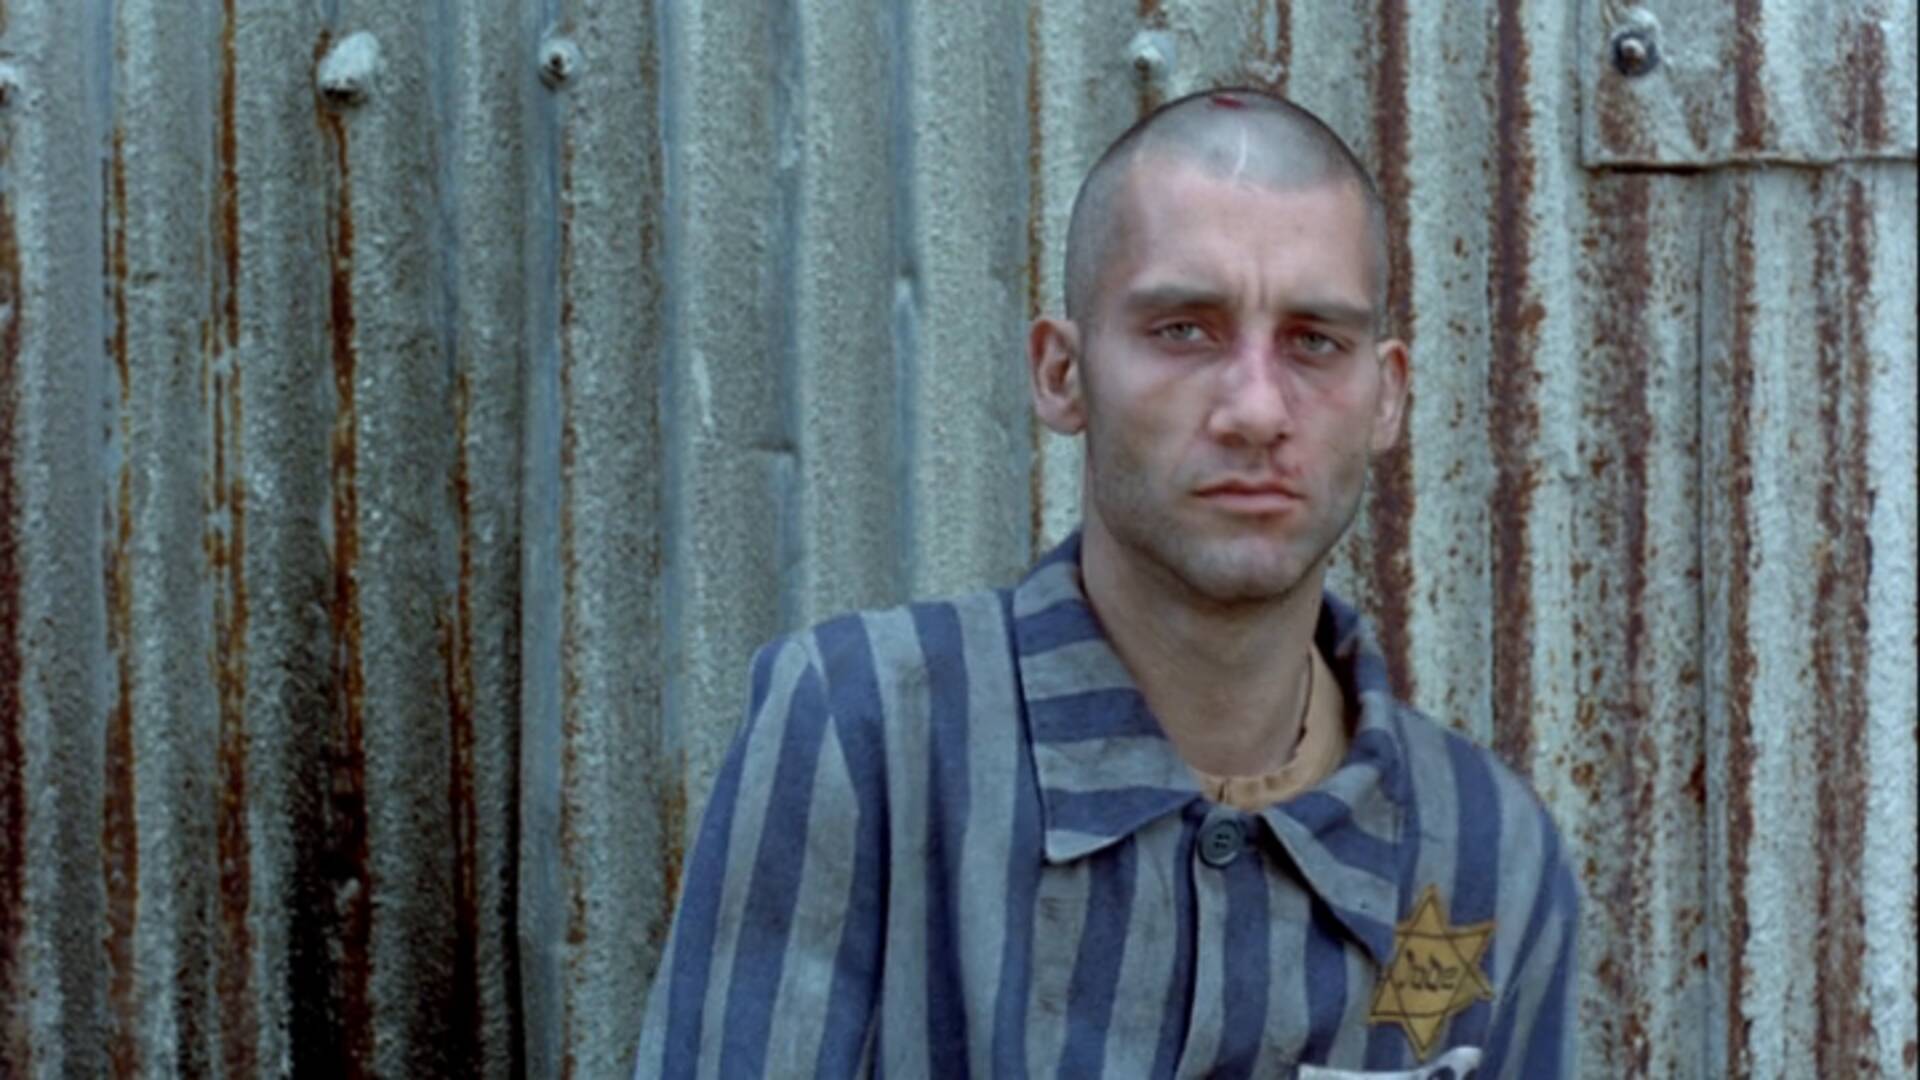 Cena do filme "Bent", que conta sobre a perseguição sofrida por homens gays durante o Holocausto. Foto: Reprodução